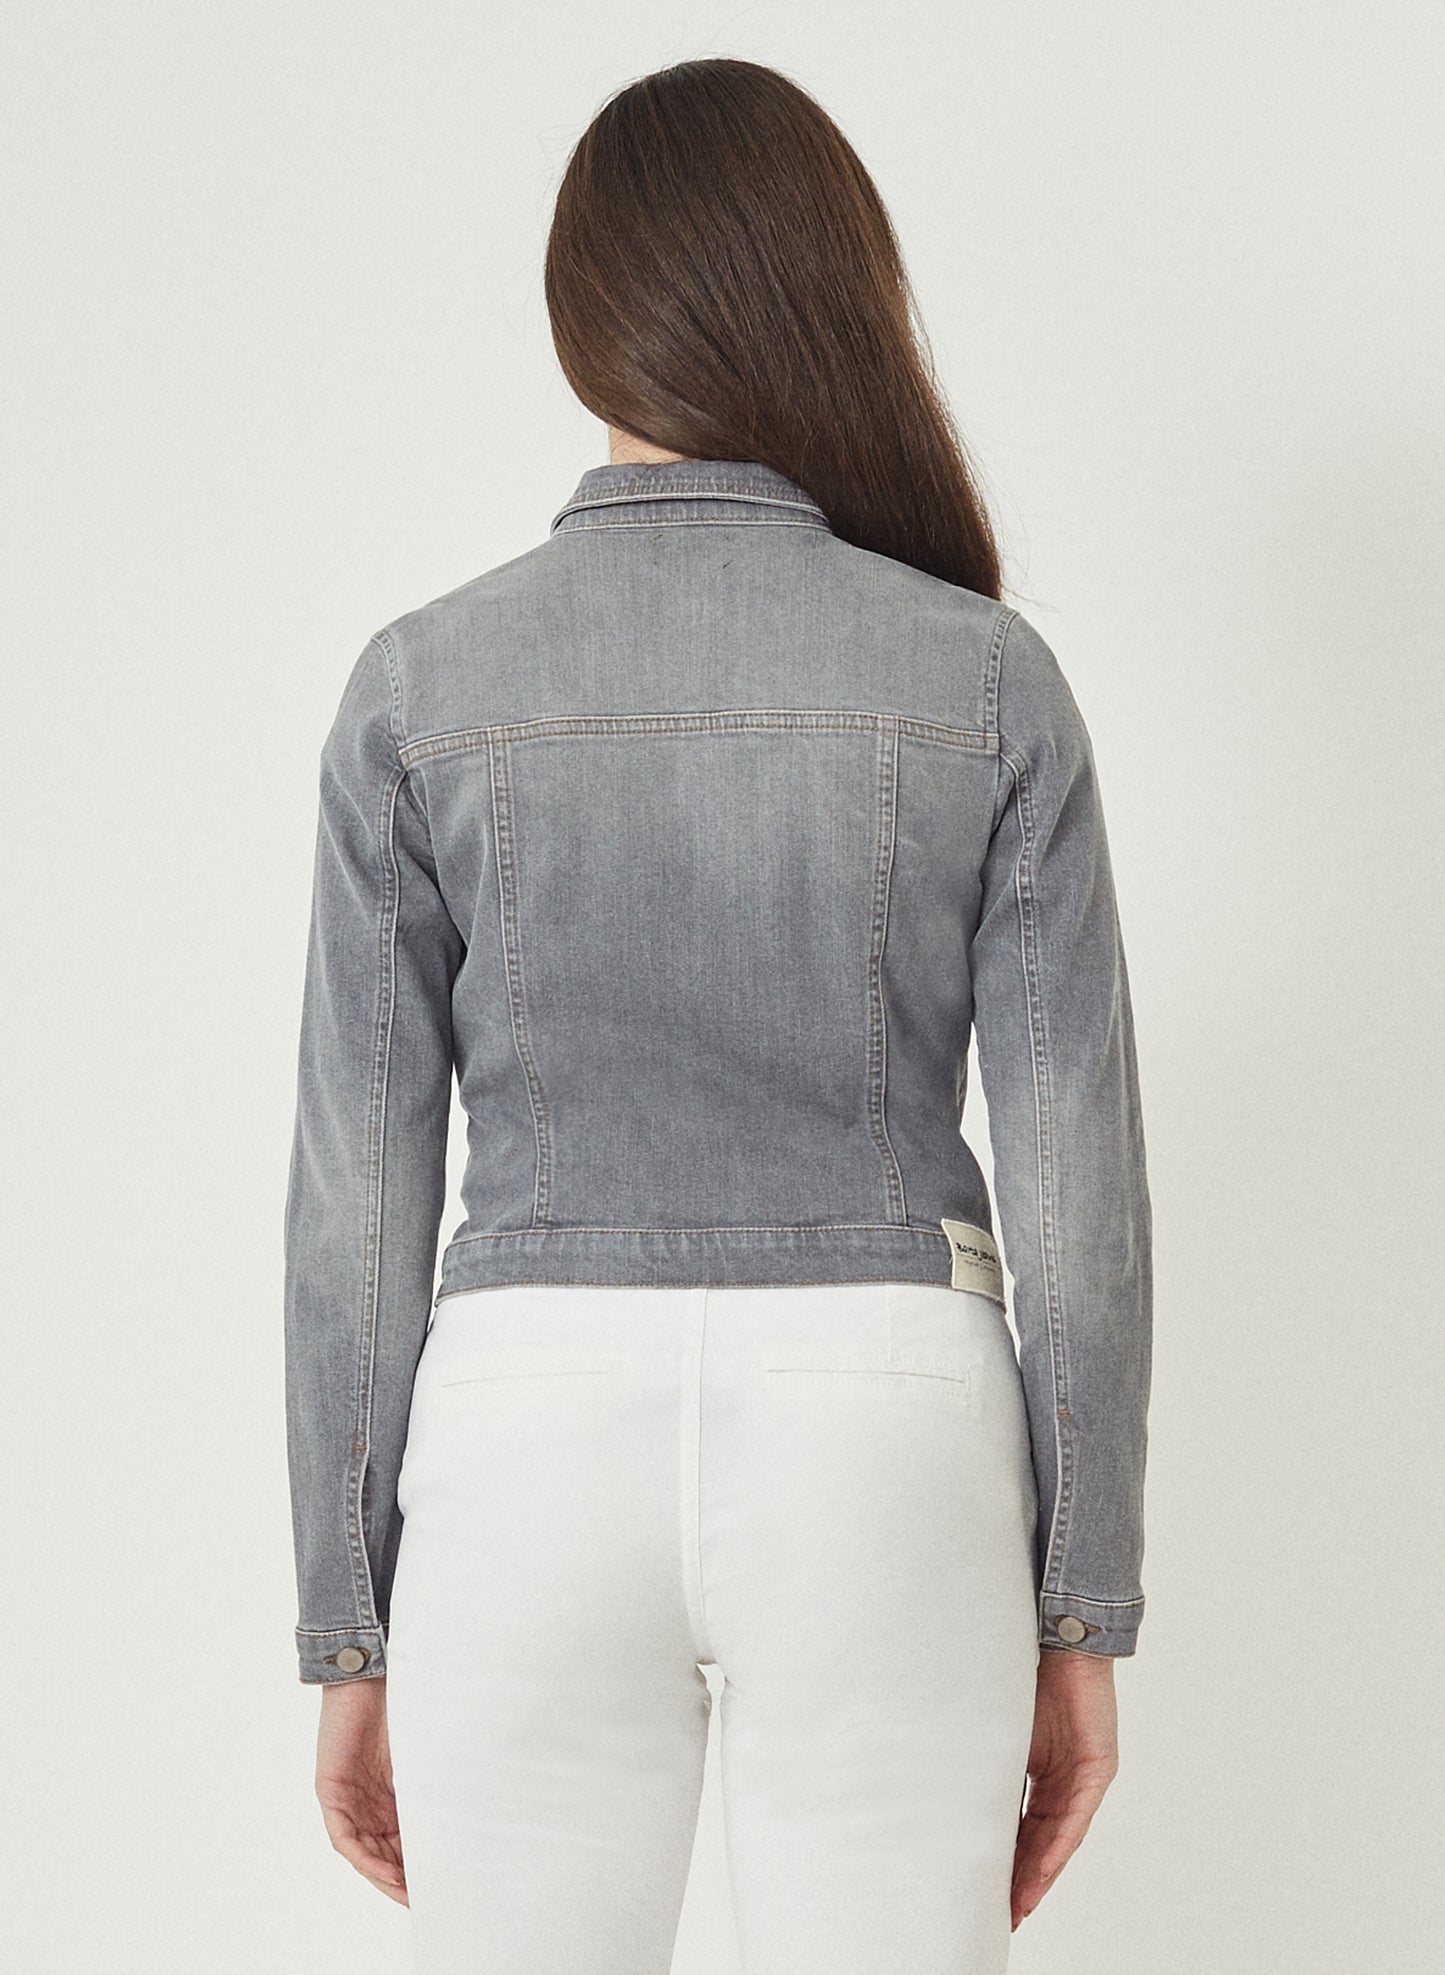 JENNA - Classic Denim Jeans Jacket - Grey Denim